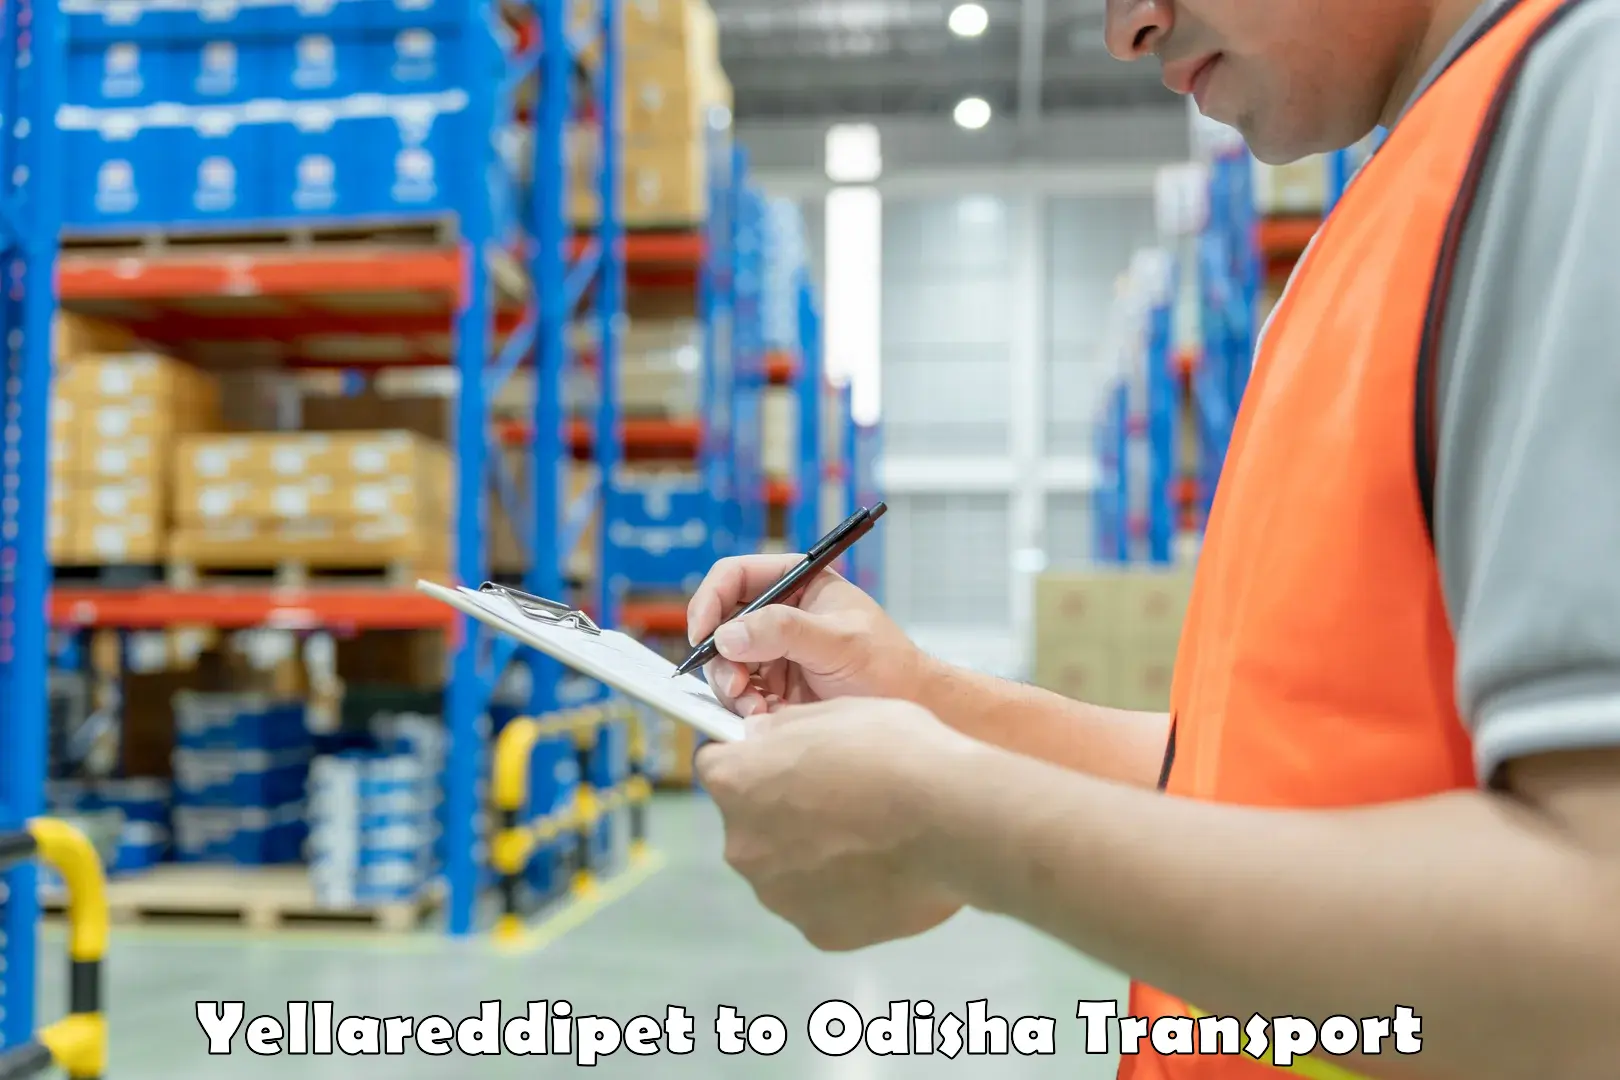 Shipping partner Yellareddipet to Odisha